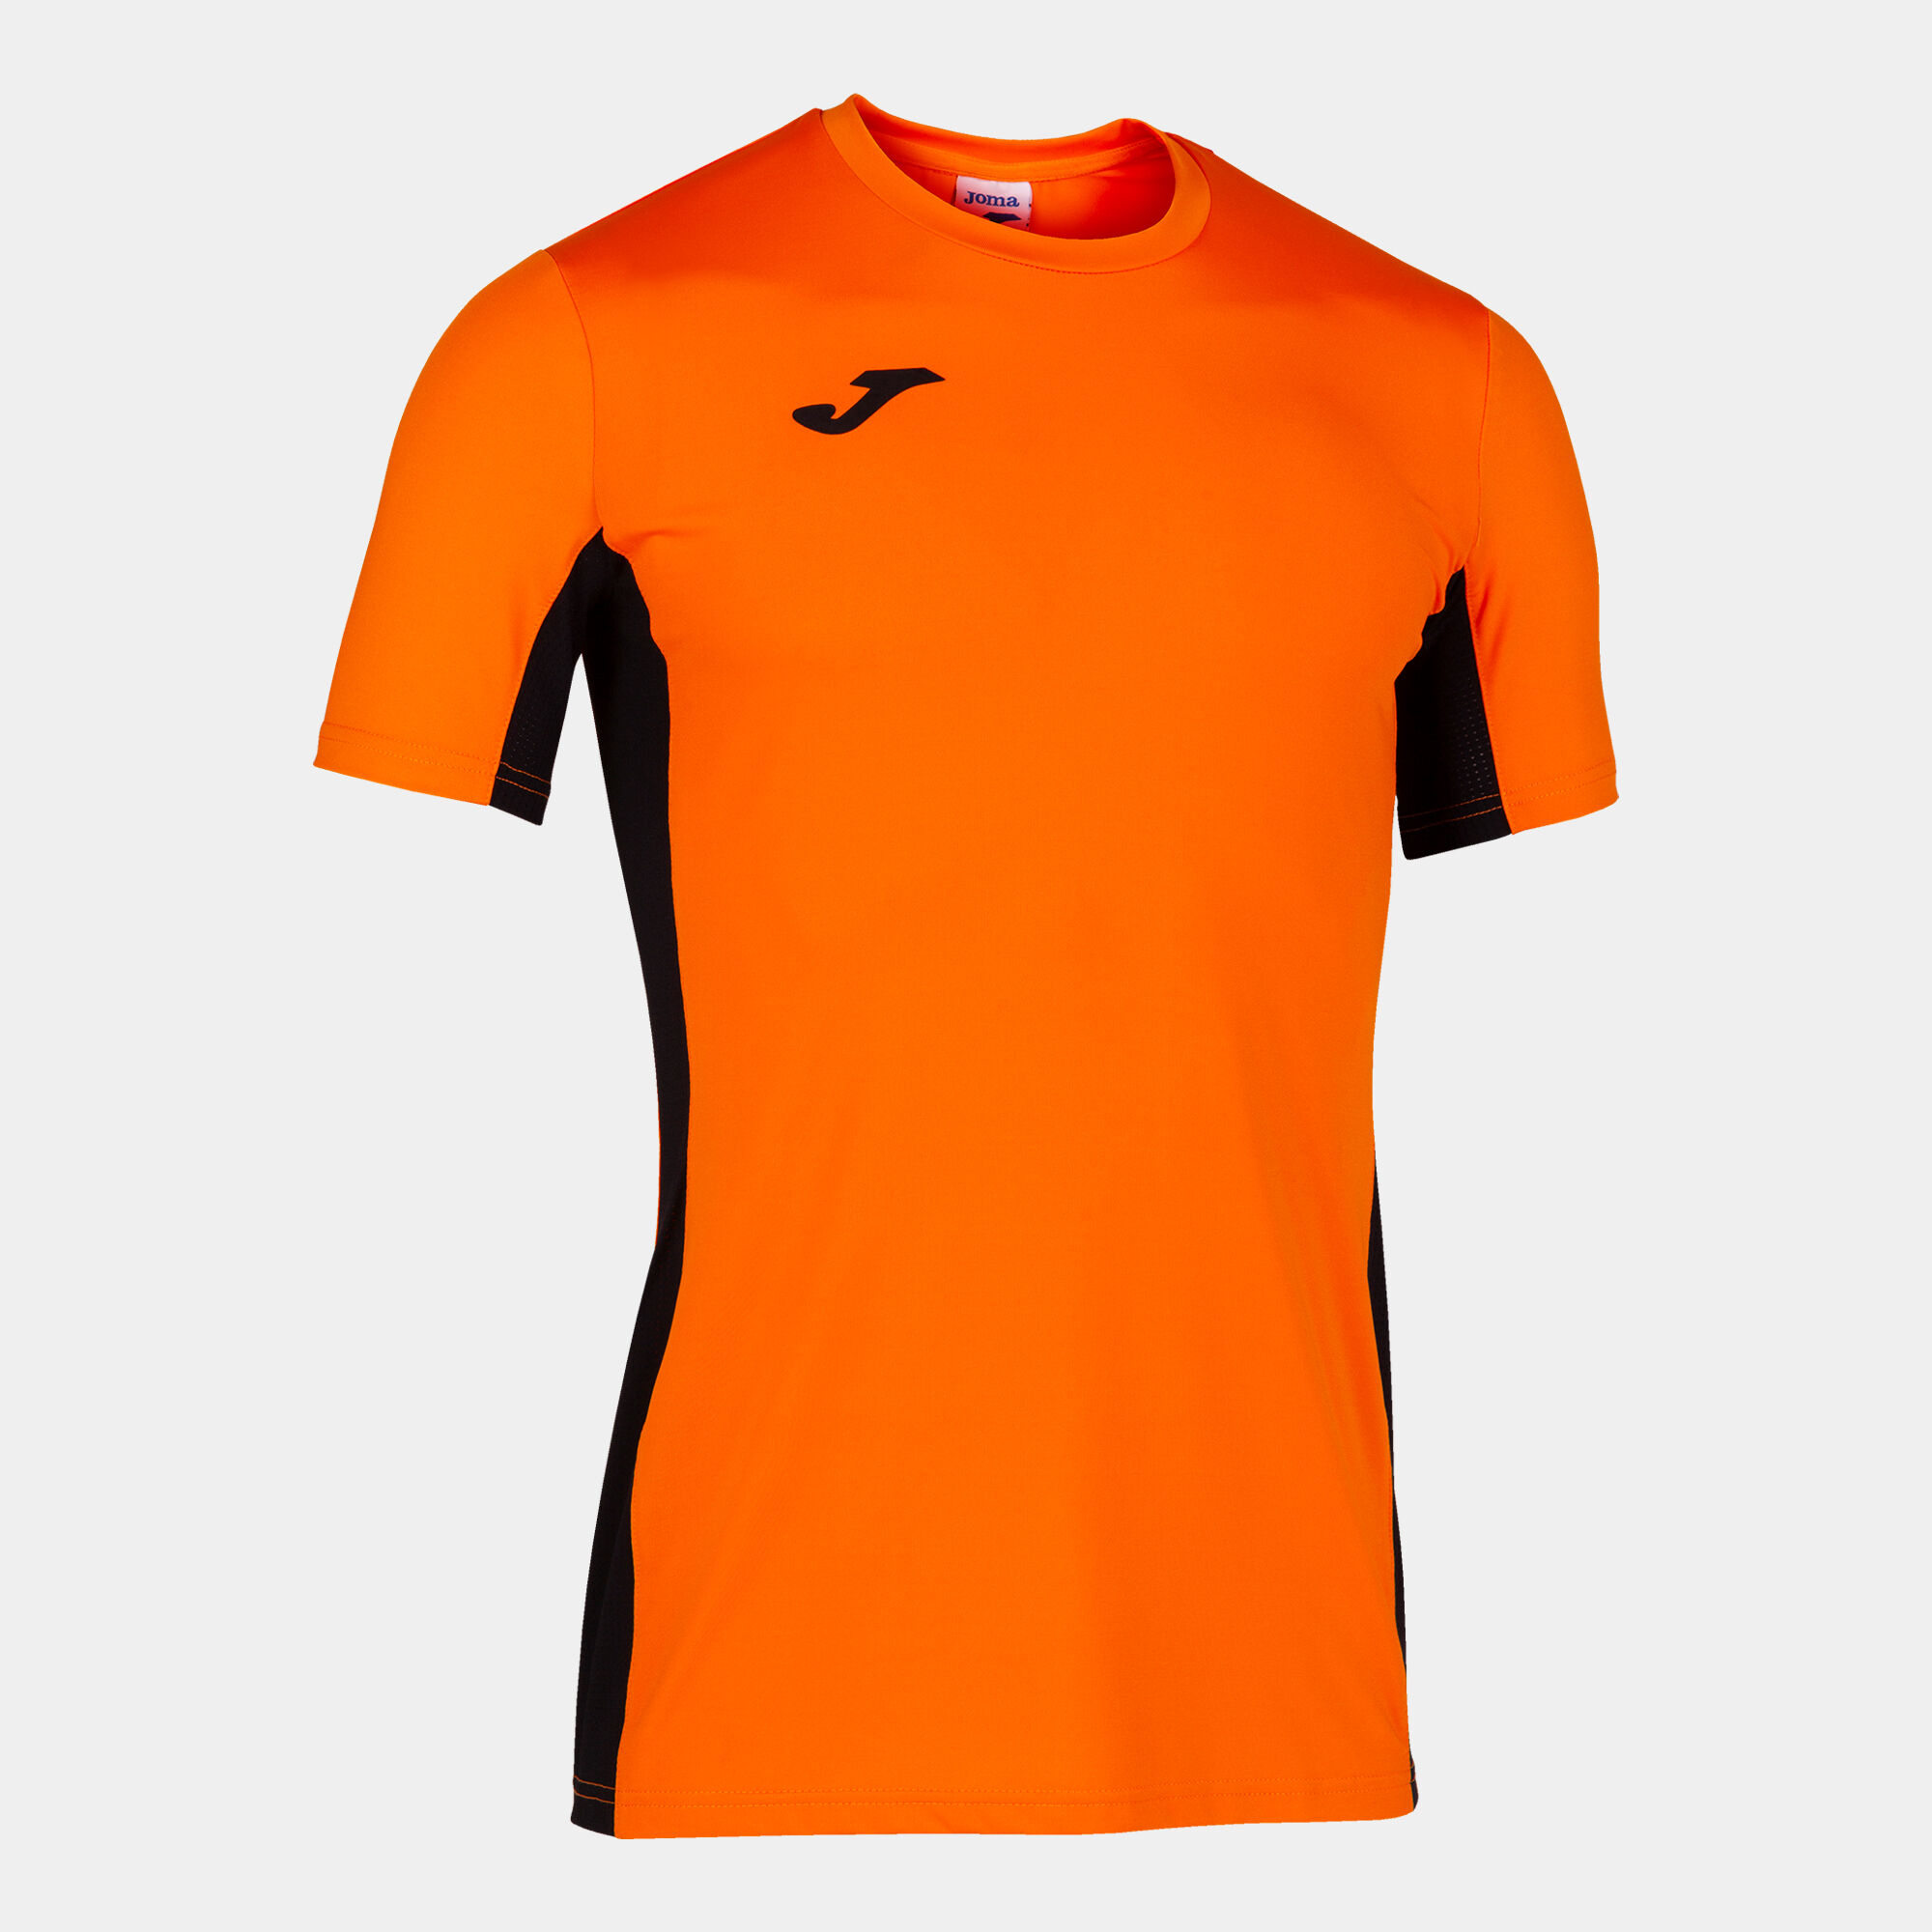 Camiseta manga corta hombre Superliga naranja negro